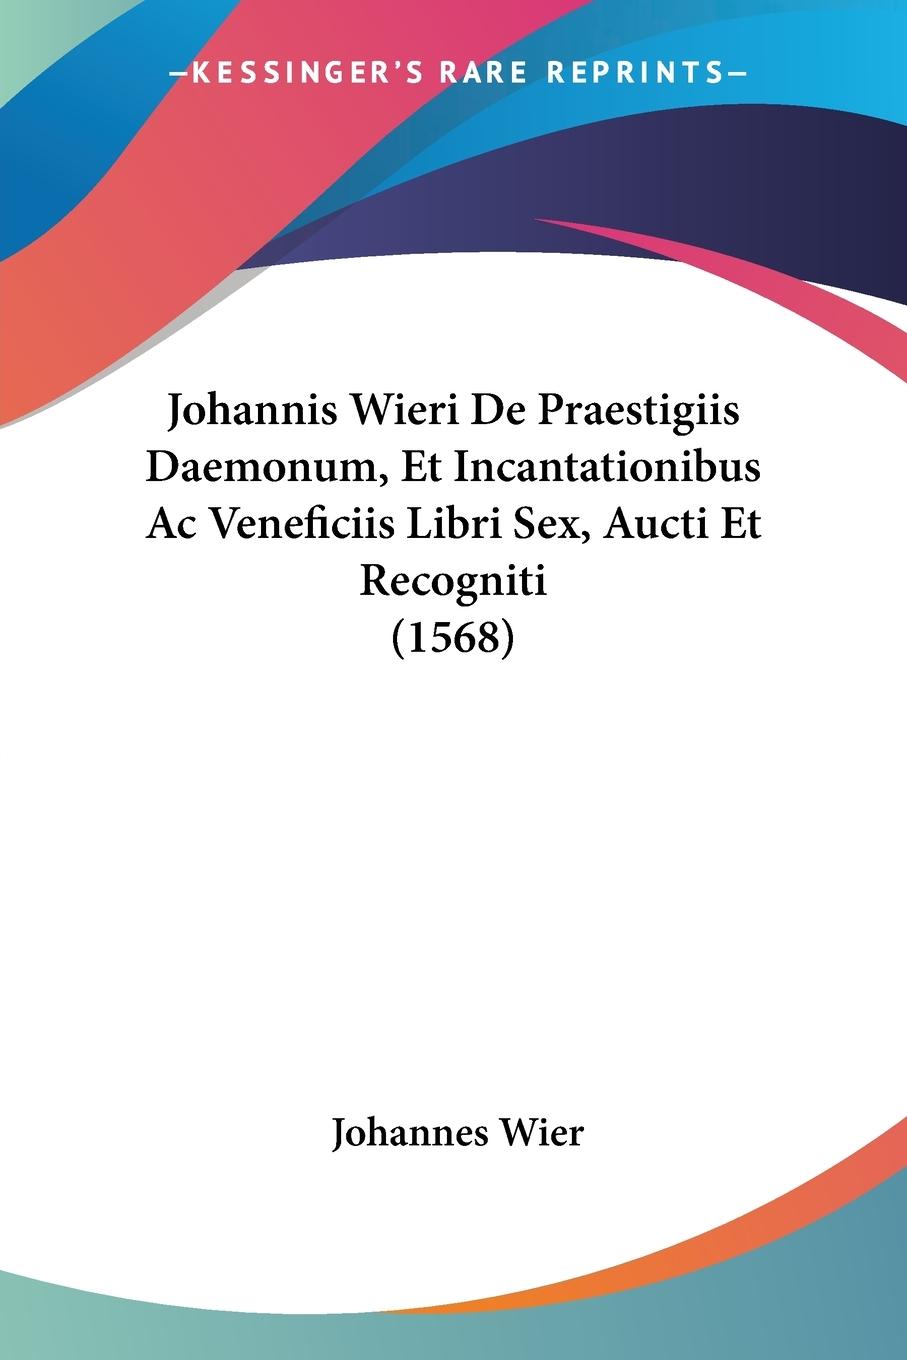 Johannis Wieri De Praestigiis Daemonum, Et Incantationibus Ac Veneficiis Libri Sex, Aucti Et Recogniti (1568) - Wier, Johannes